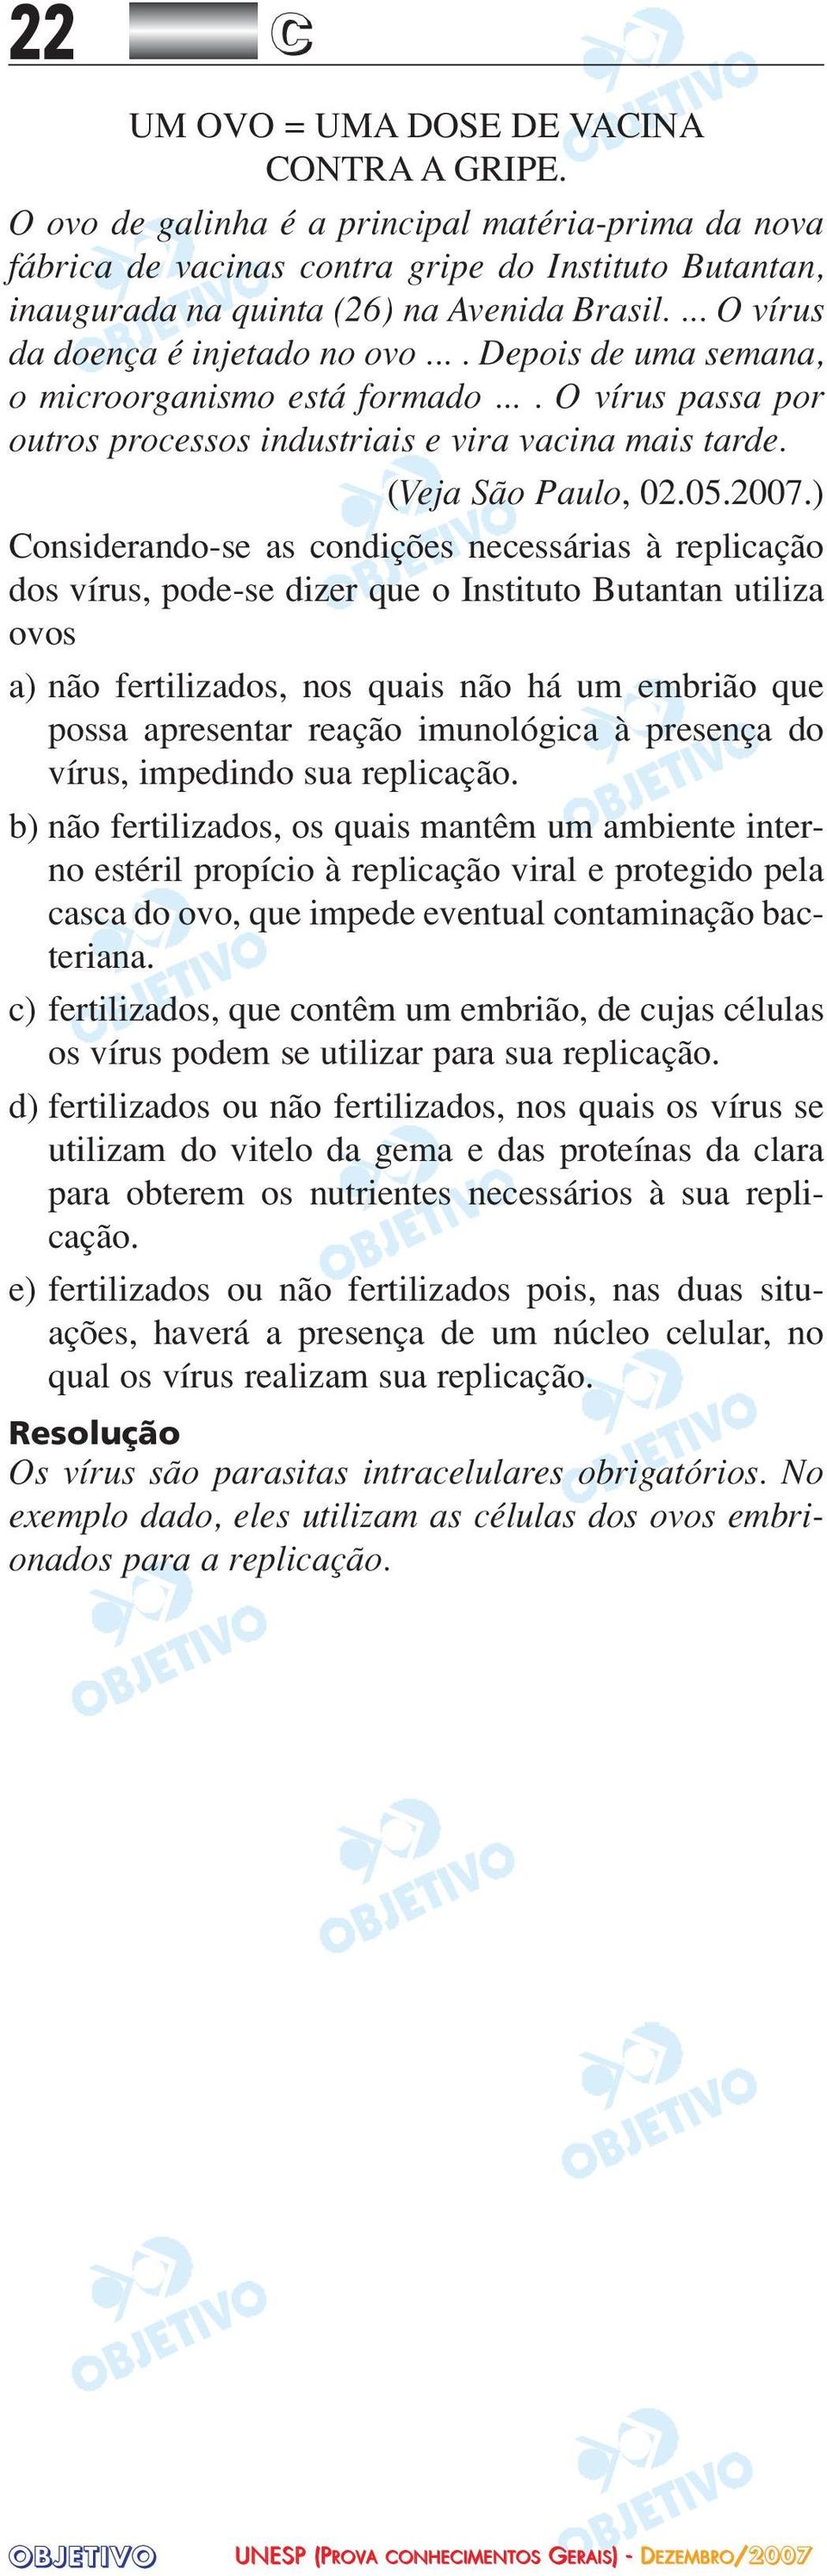 ... Depois de uma semana, o microorganismo está formado.... O vírus passa por outros processos industriais e vira vacina mais tarde. (Veja São Paulo, 02.05.2007.